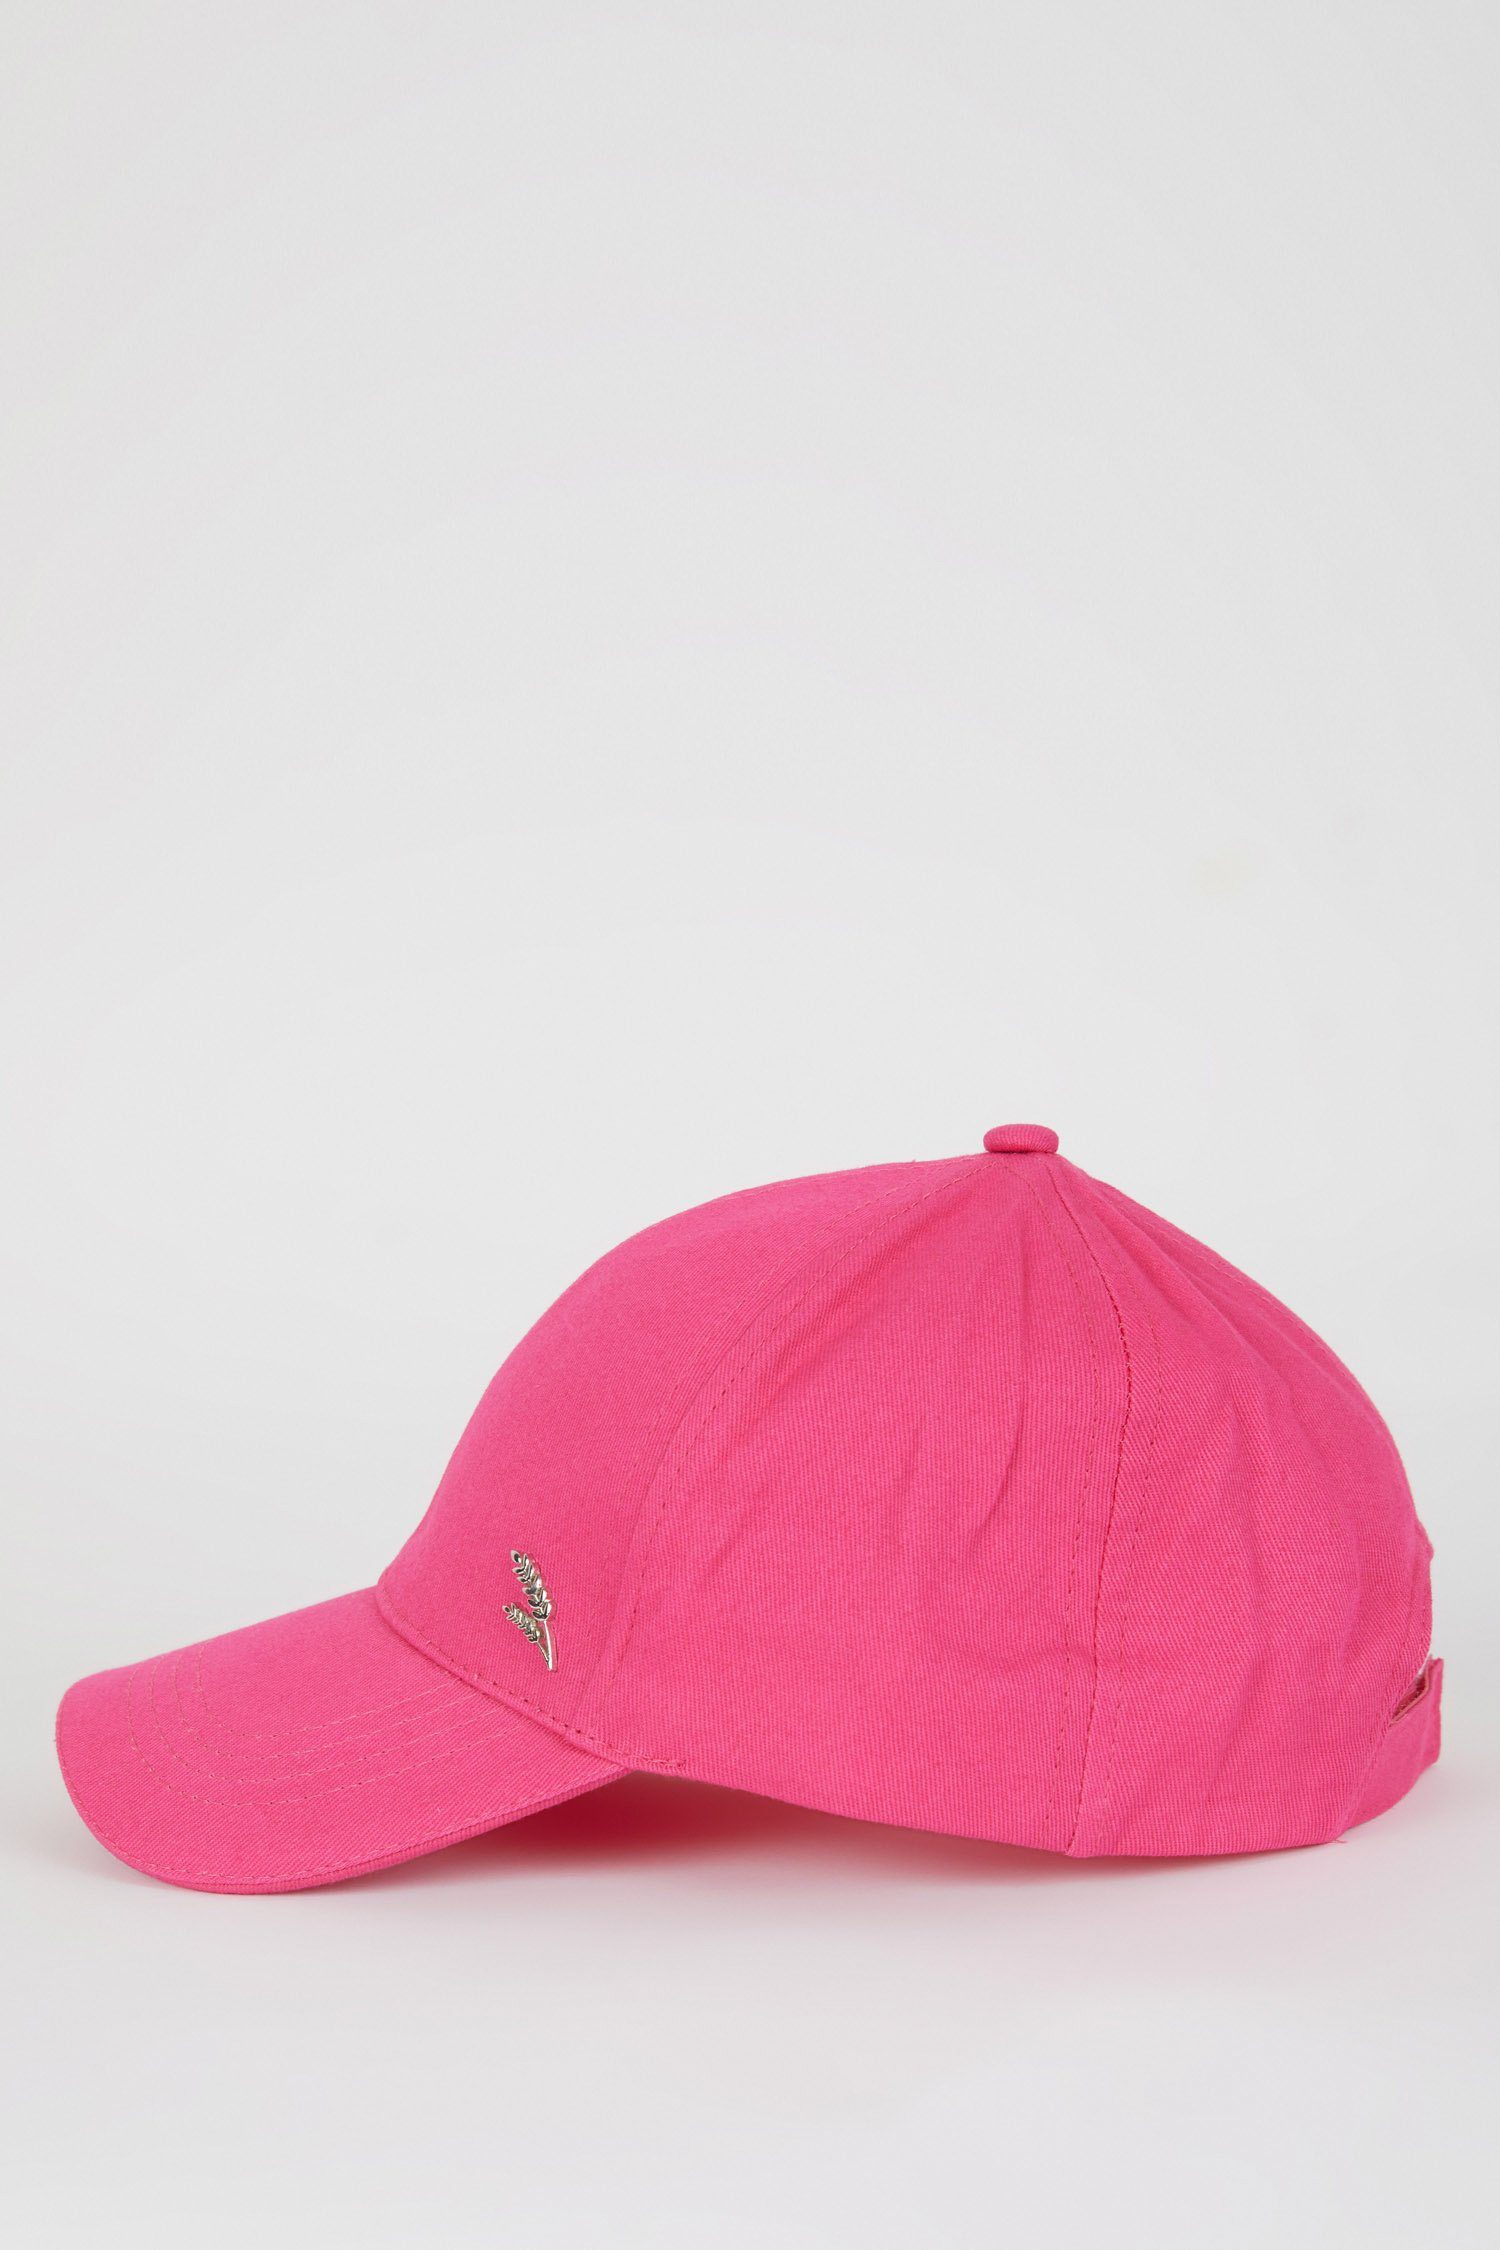 DeFacto Damen Cap Pink Neon Cap Snapback